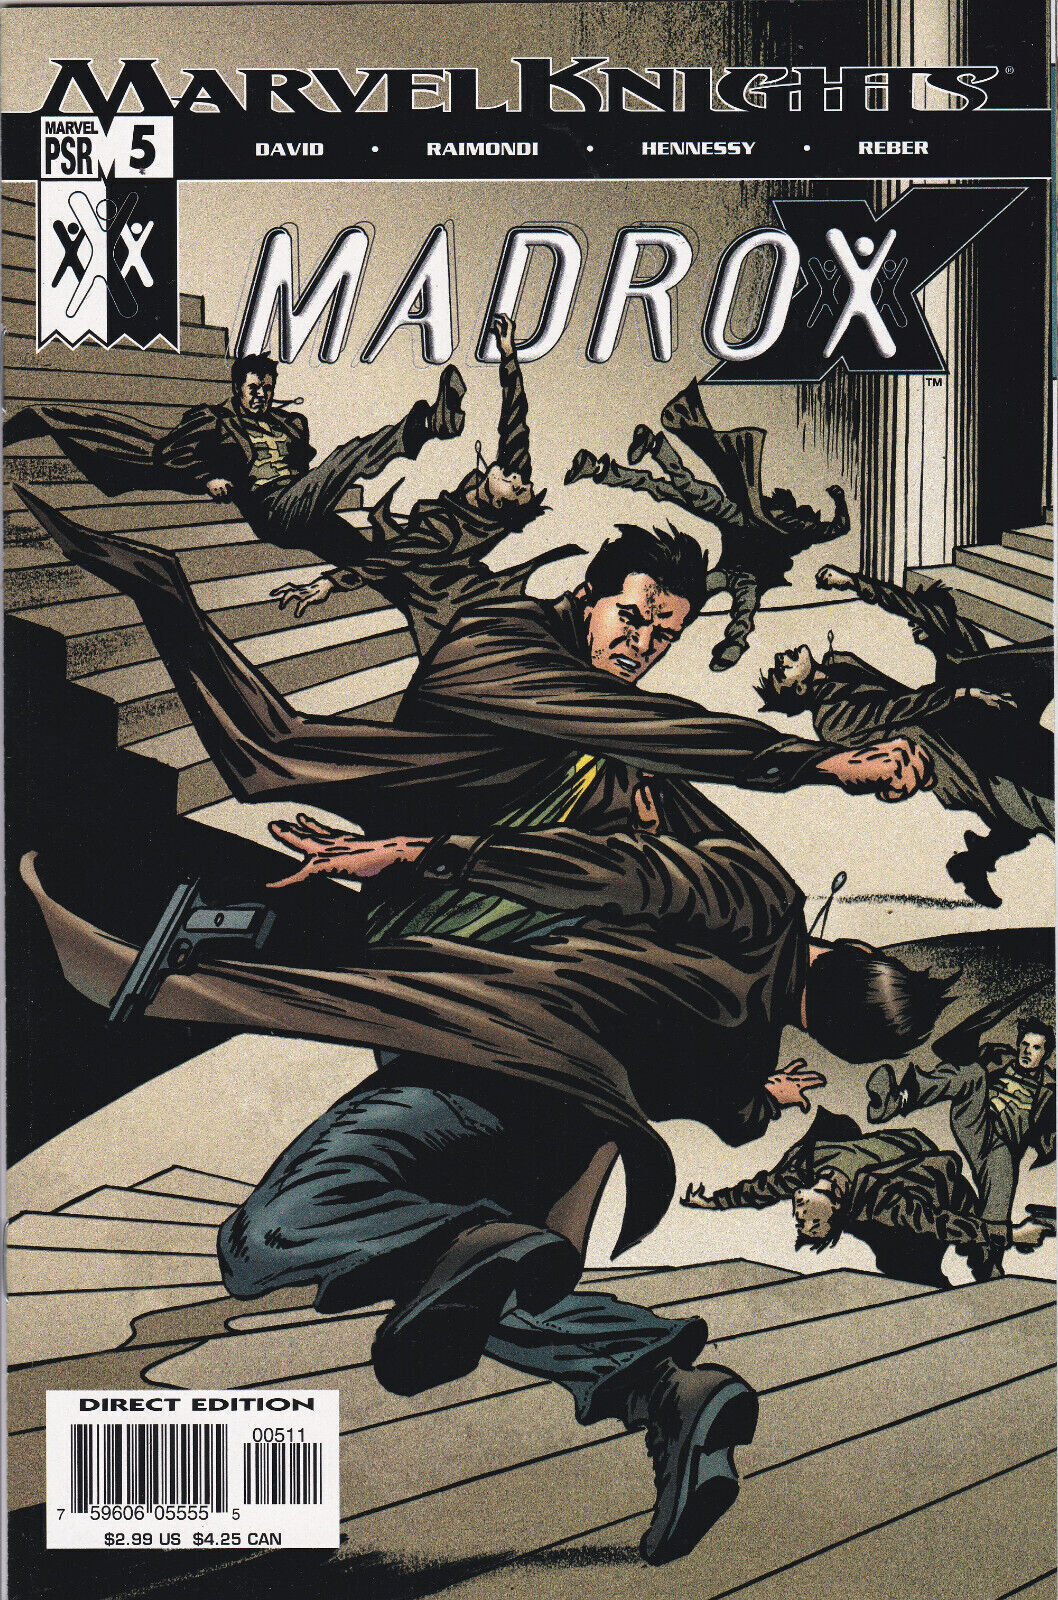 Madrox #5 (2004-2005) Marvel Knights, High Grade, Original Owner